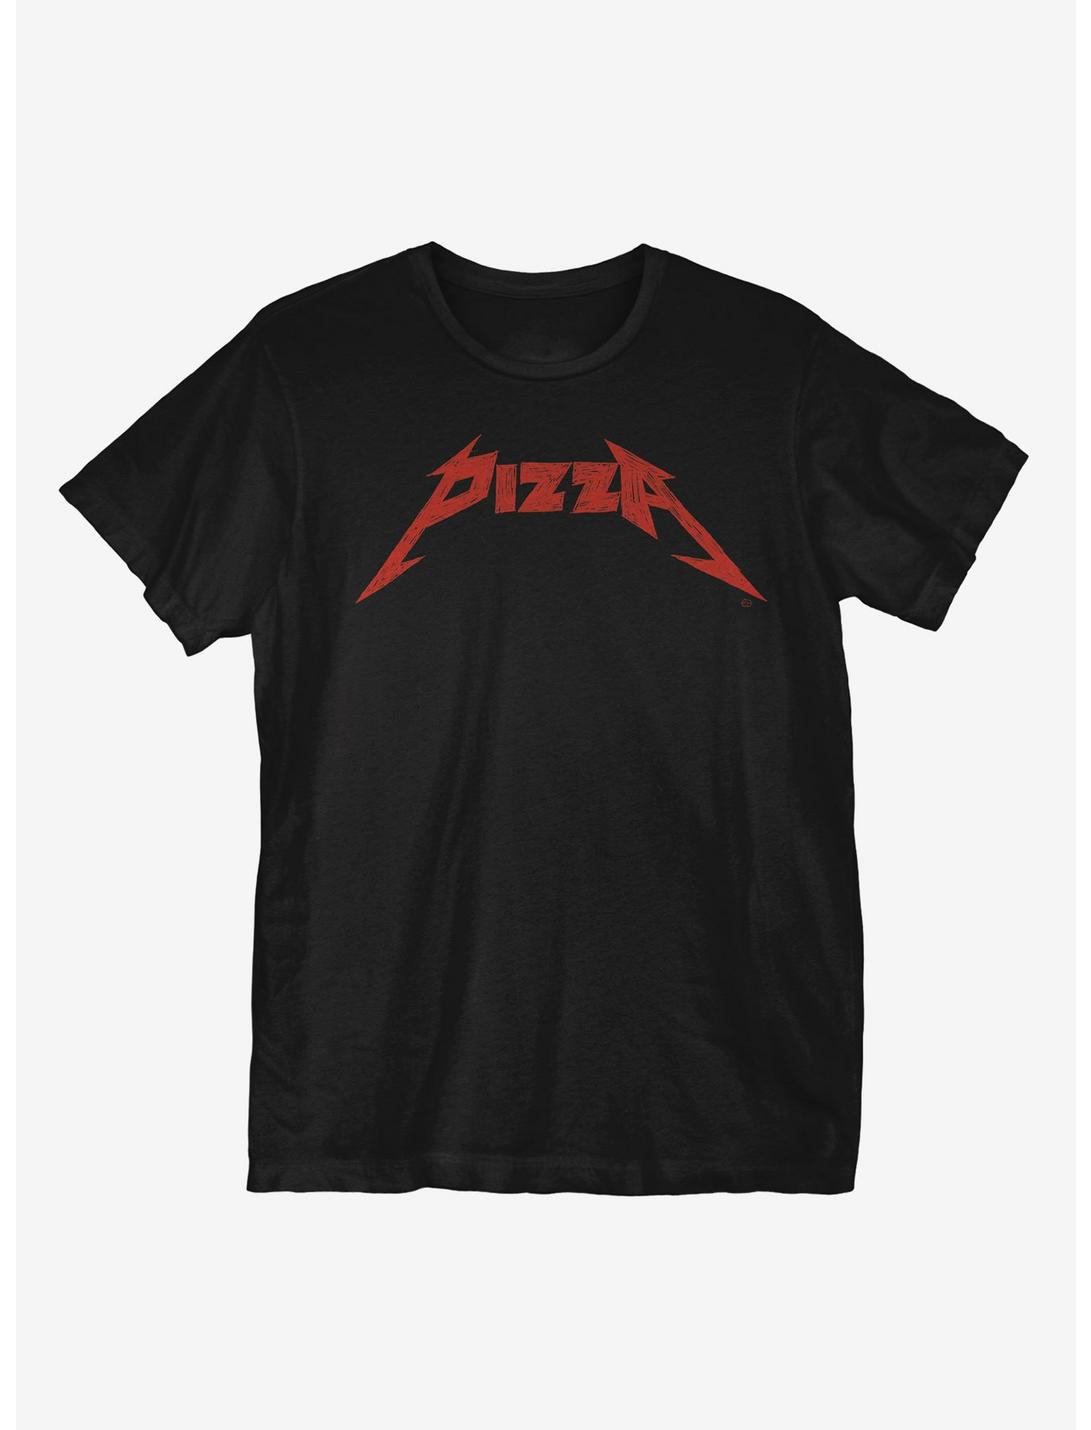 Enter Pizzaman T-Shirt, BLACK, hi-res